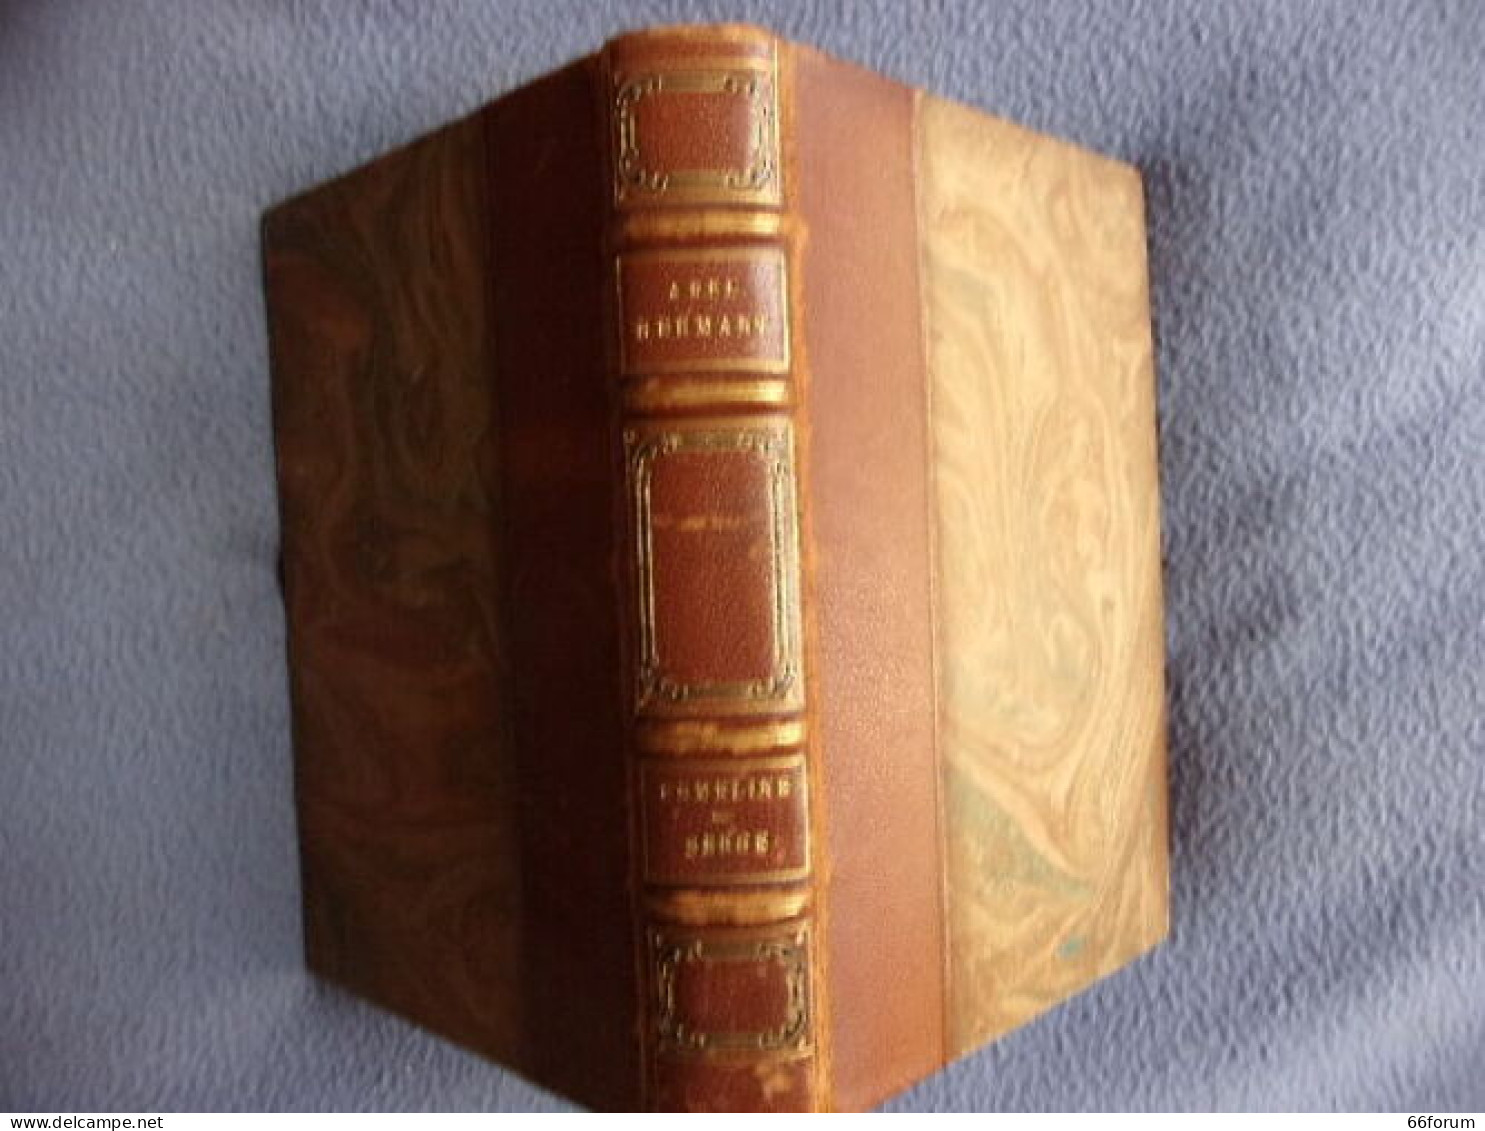 Ermeline-Serge- édition Définitive - 1801-1900